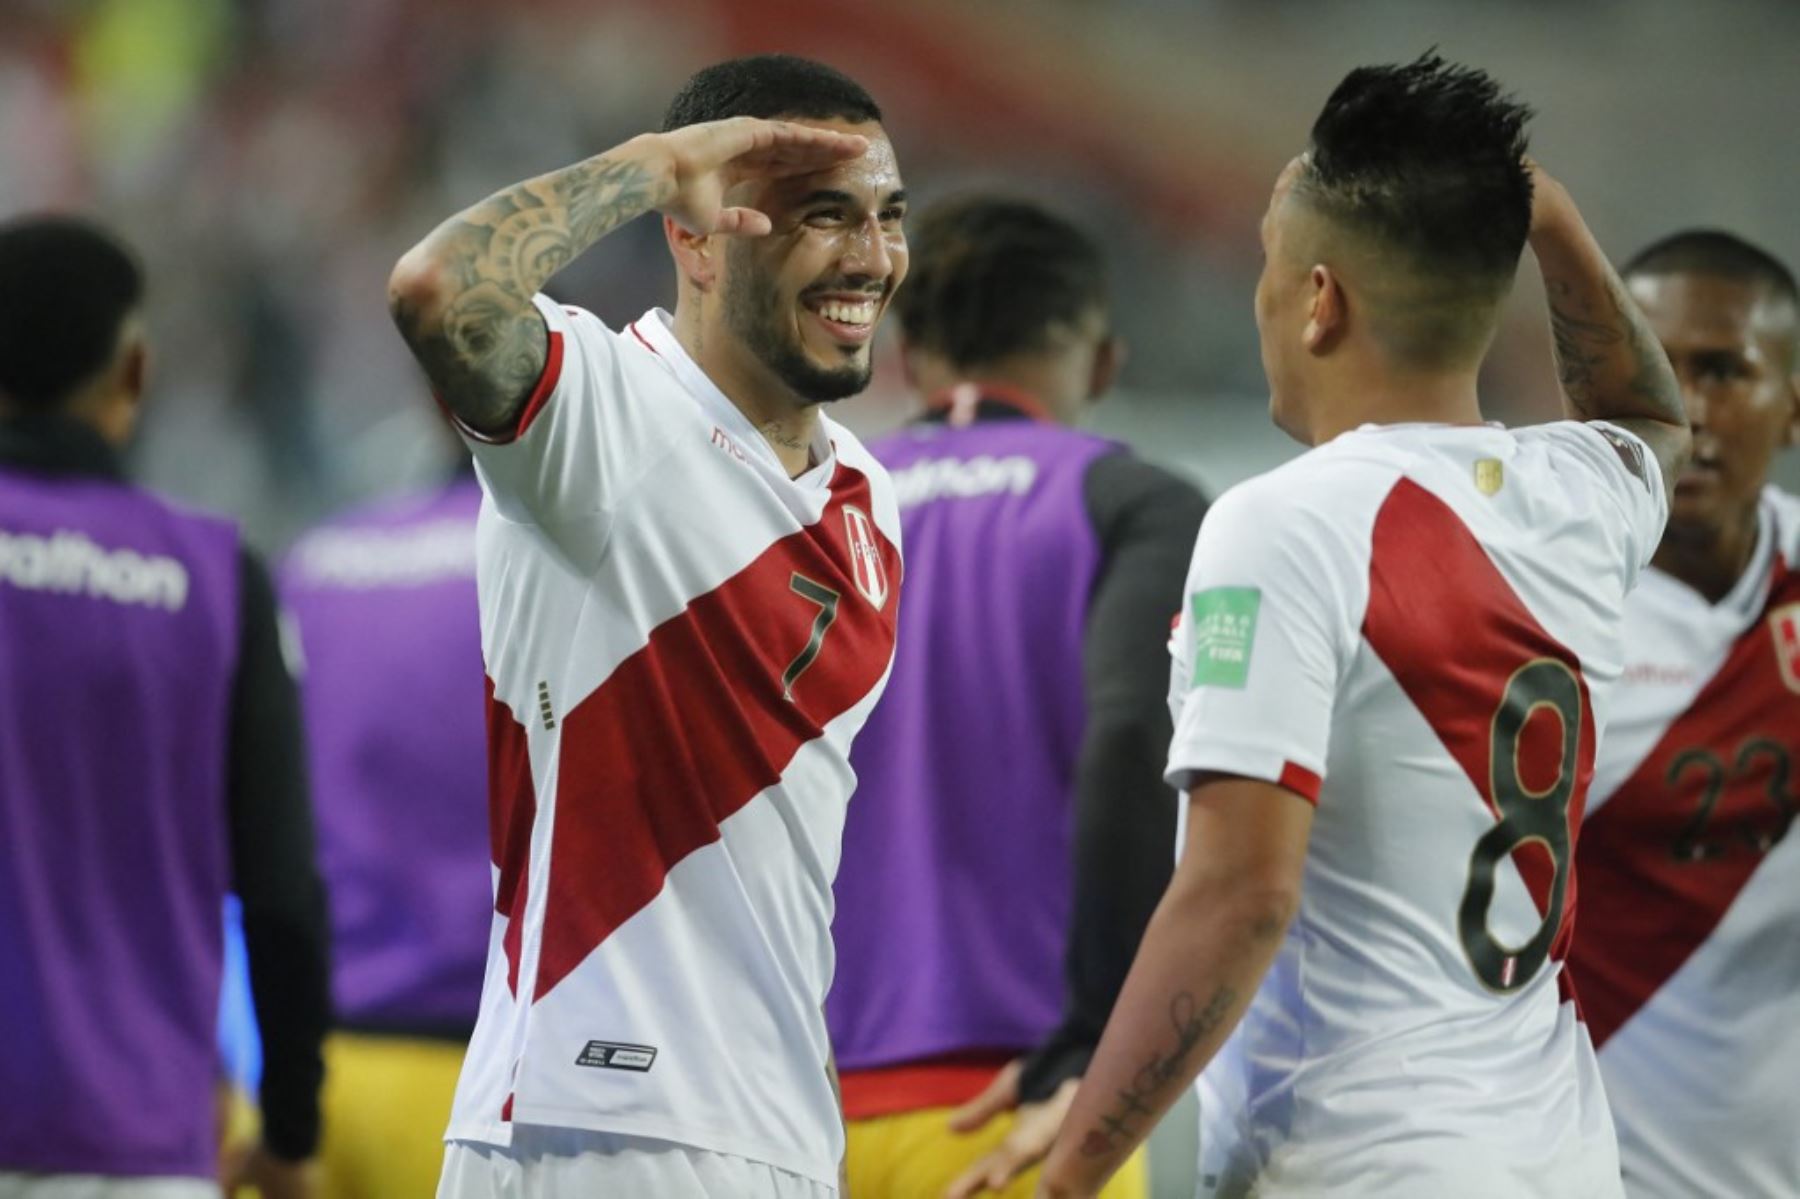 Sergio Peña de Perú celebra tras anotar contra Chile durante el partido de fútbol de clasificación sudamericano para la Copa Mundial de la FIFA Qatar 2022, en el Estadio Nacional de Lima el 7 de octubre de 2021. Foto: AFP